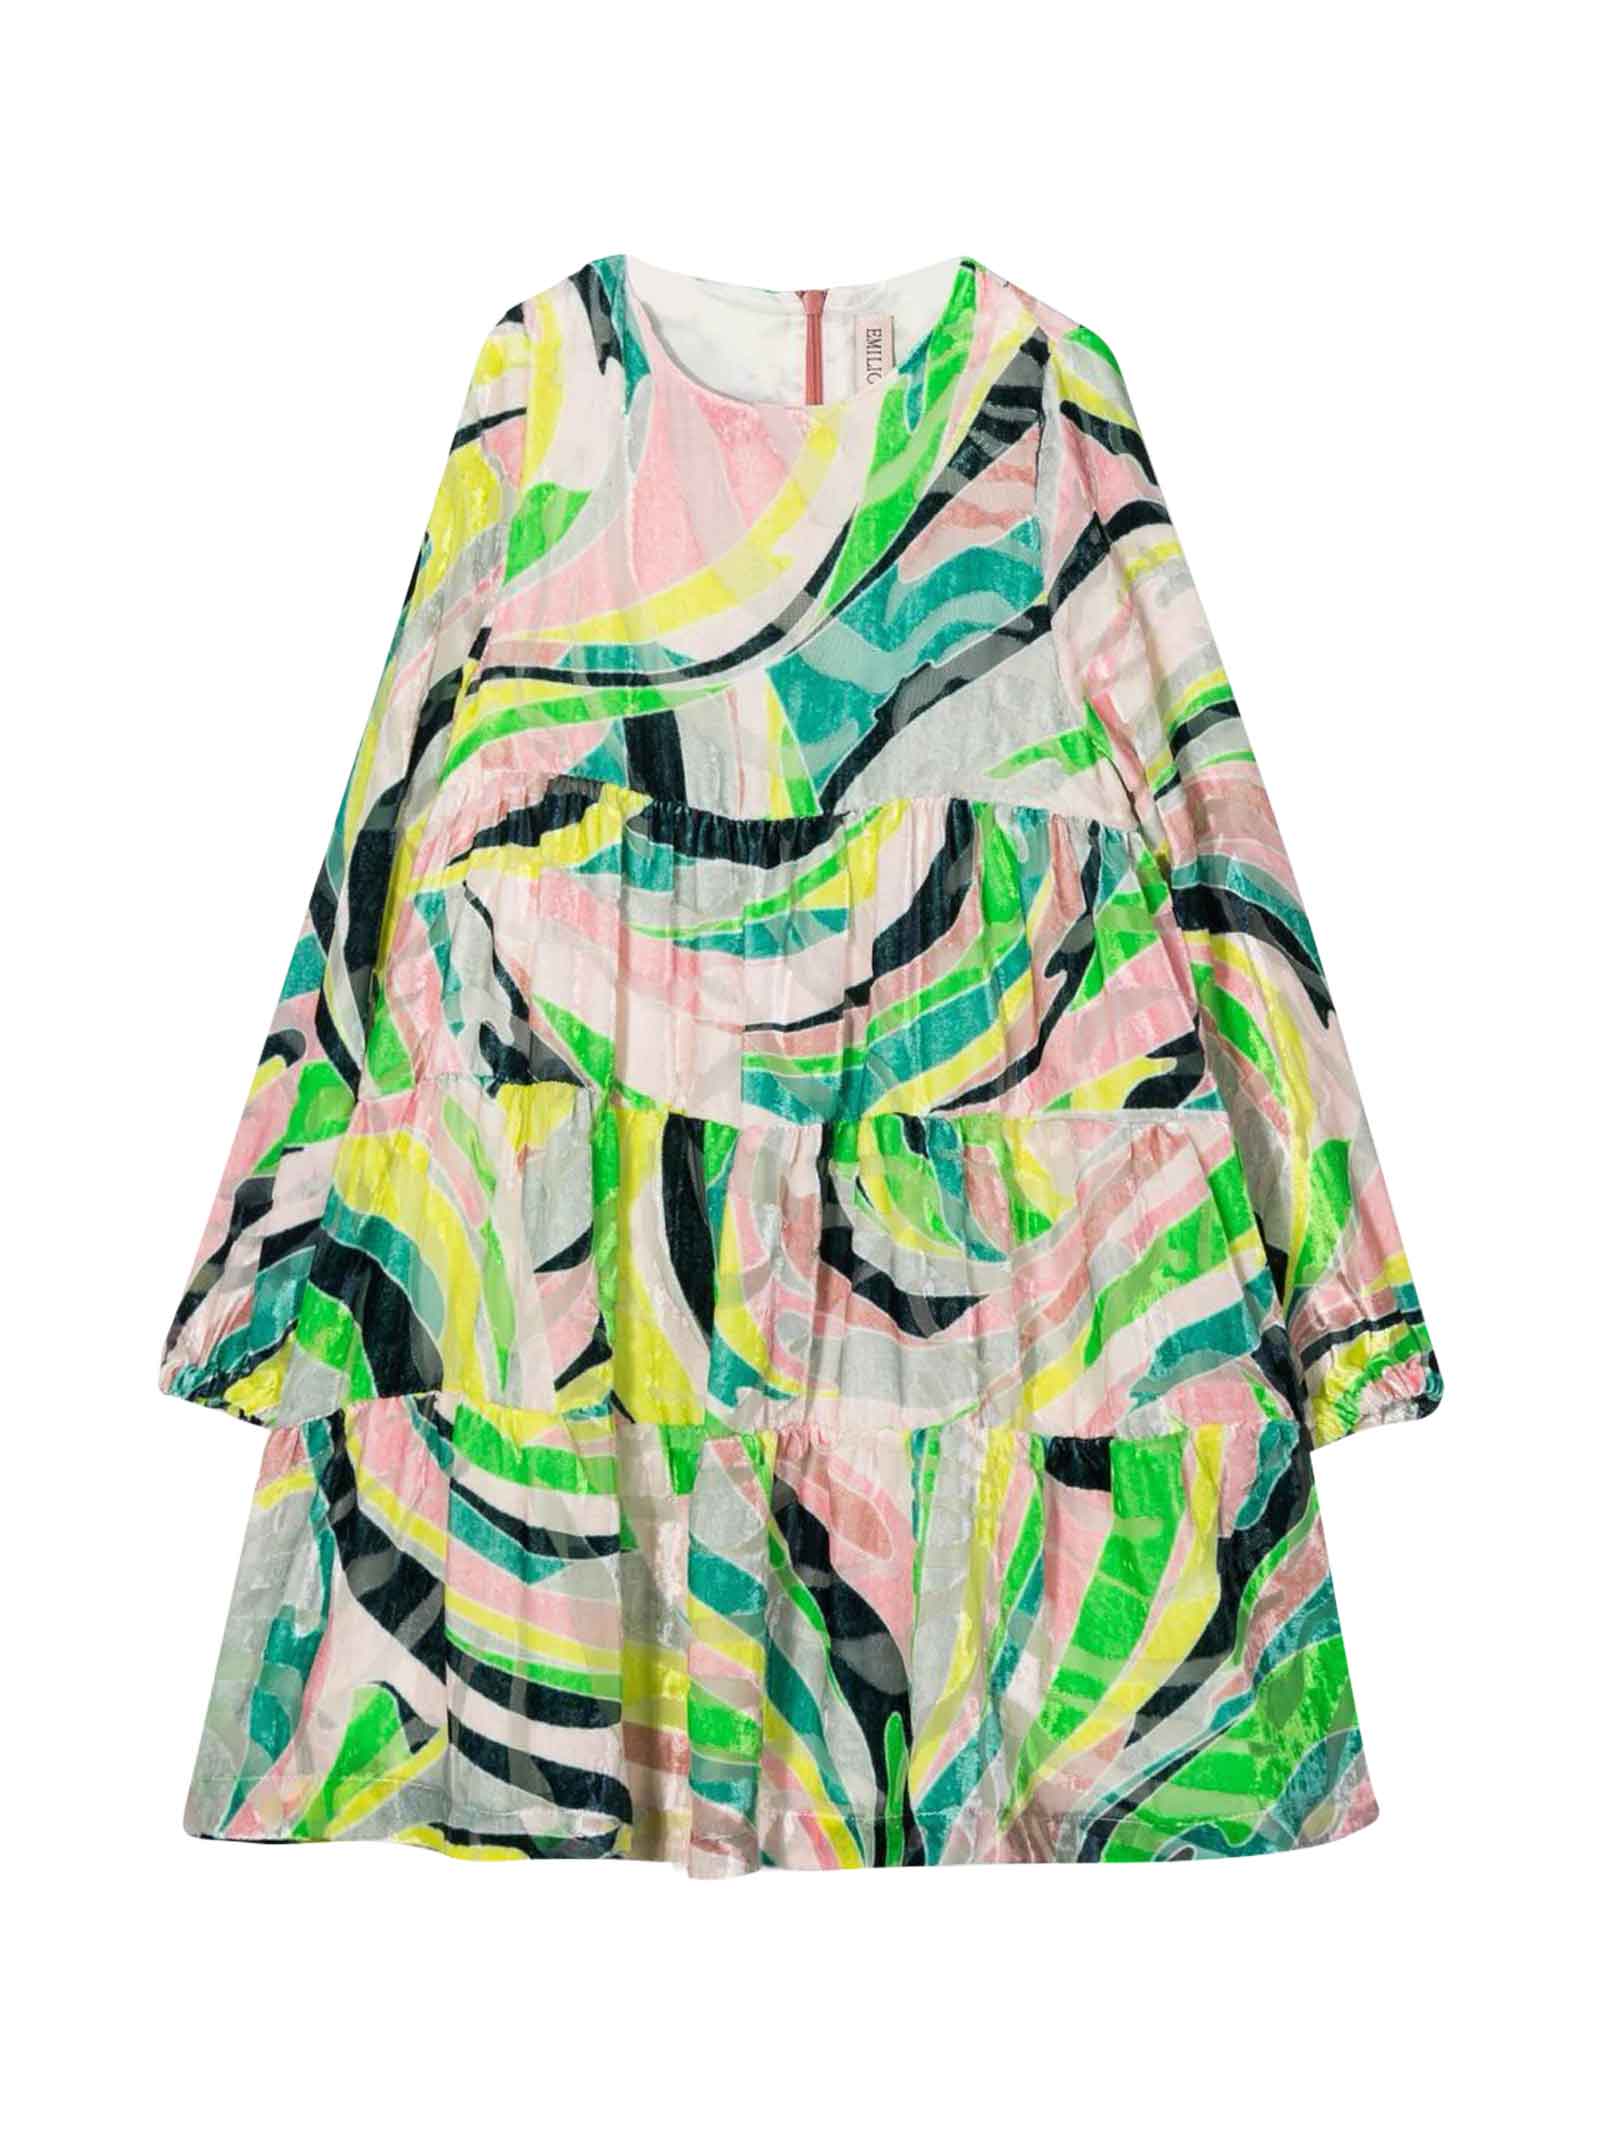 Emilio Pucci Multicolored Dress Girl